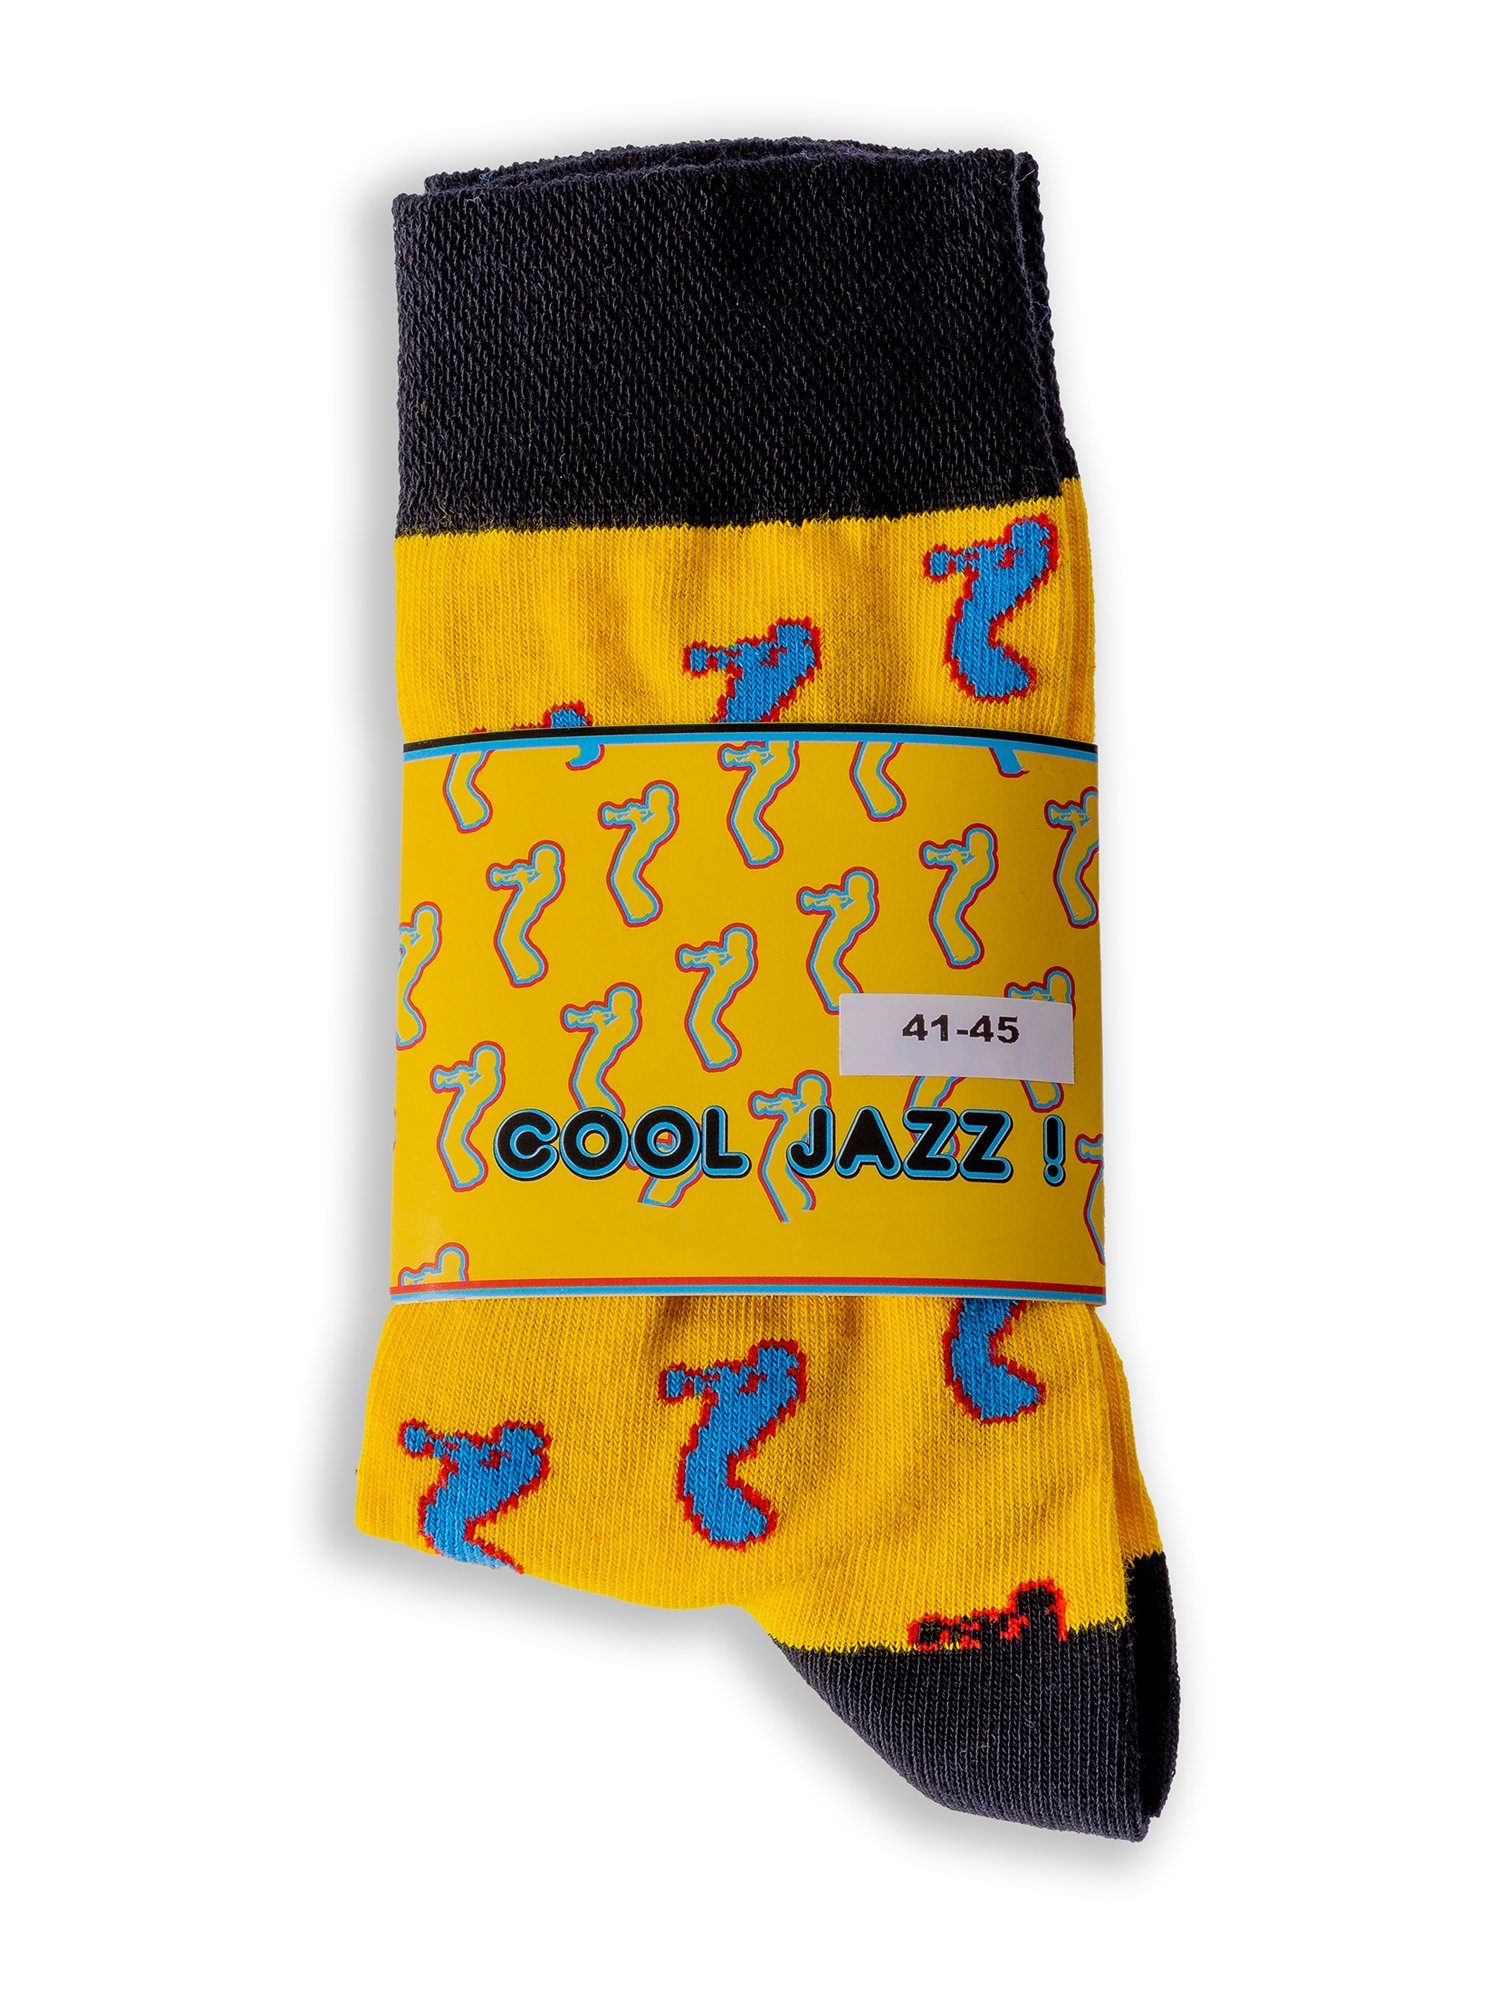 Freizeitsocken Socks Lifestyle Banderole Jazz Leisure Chili